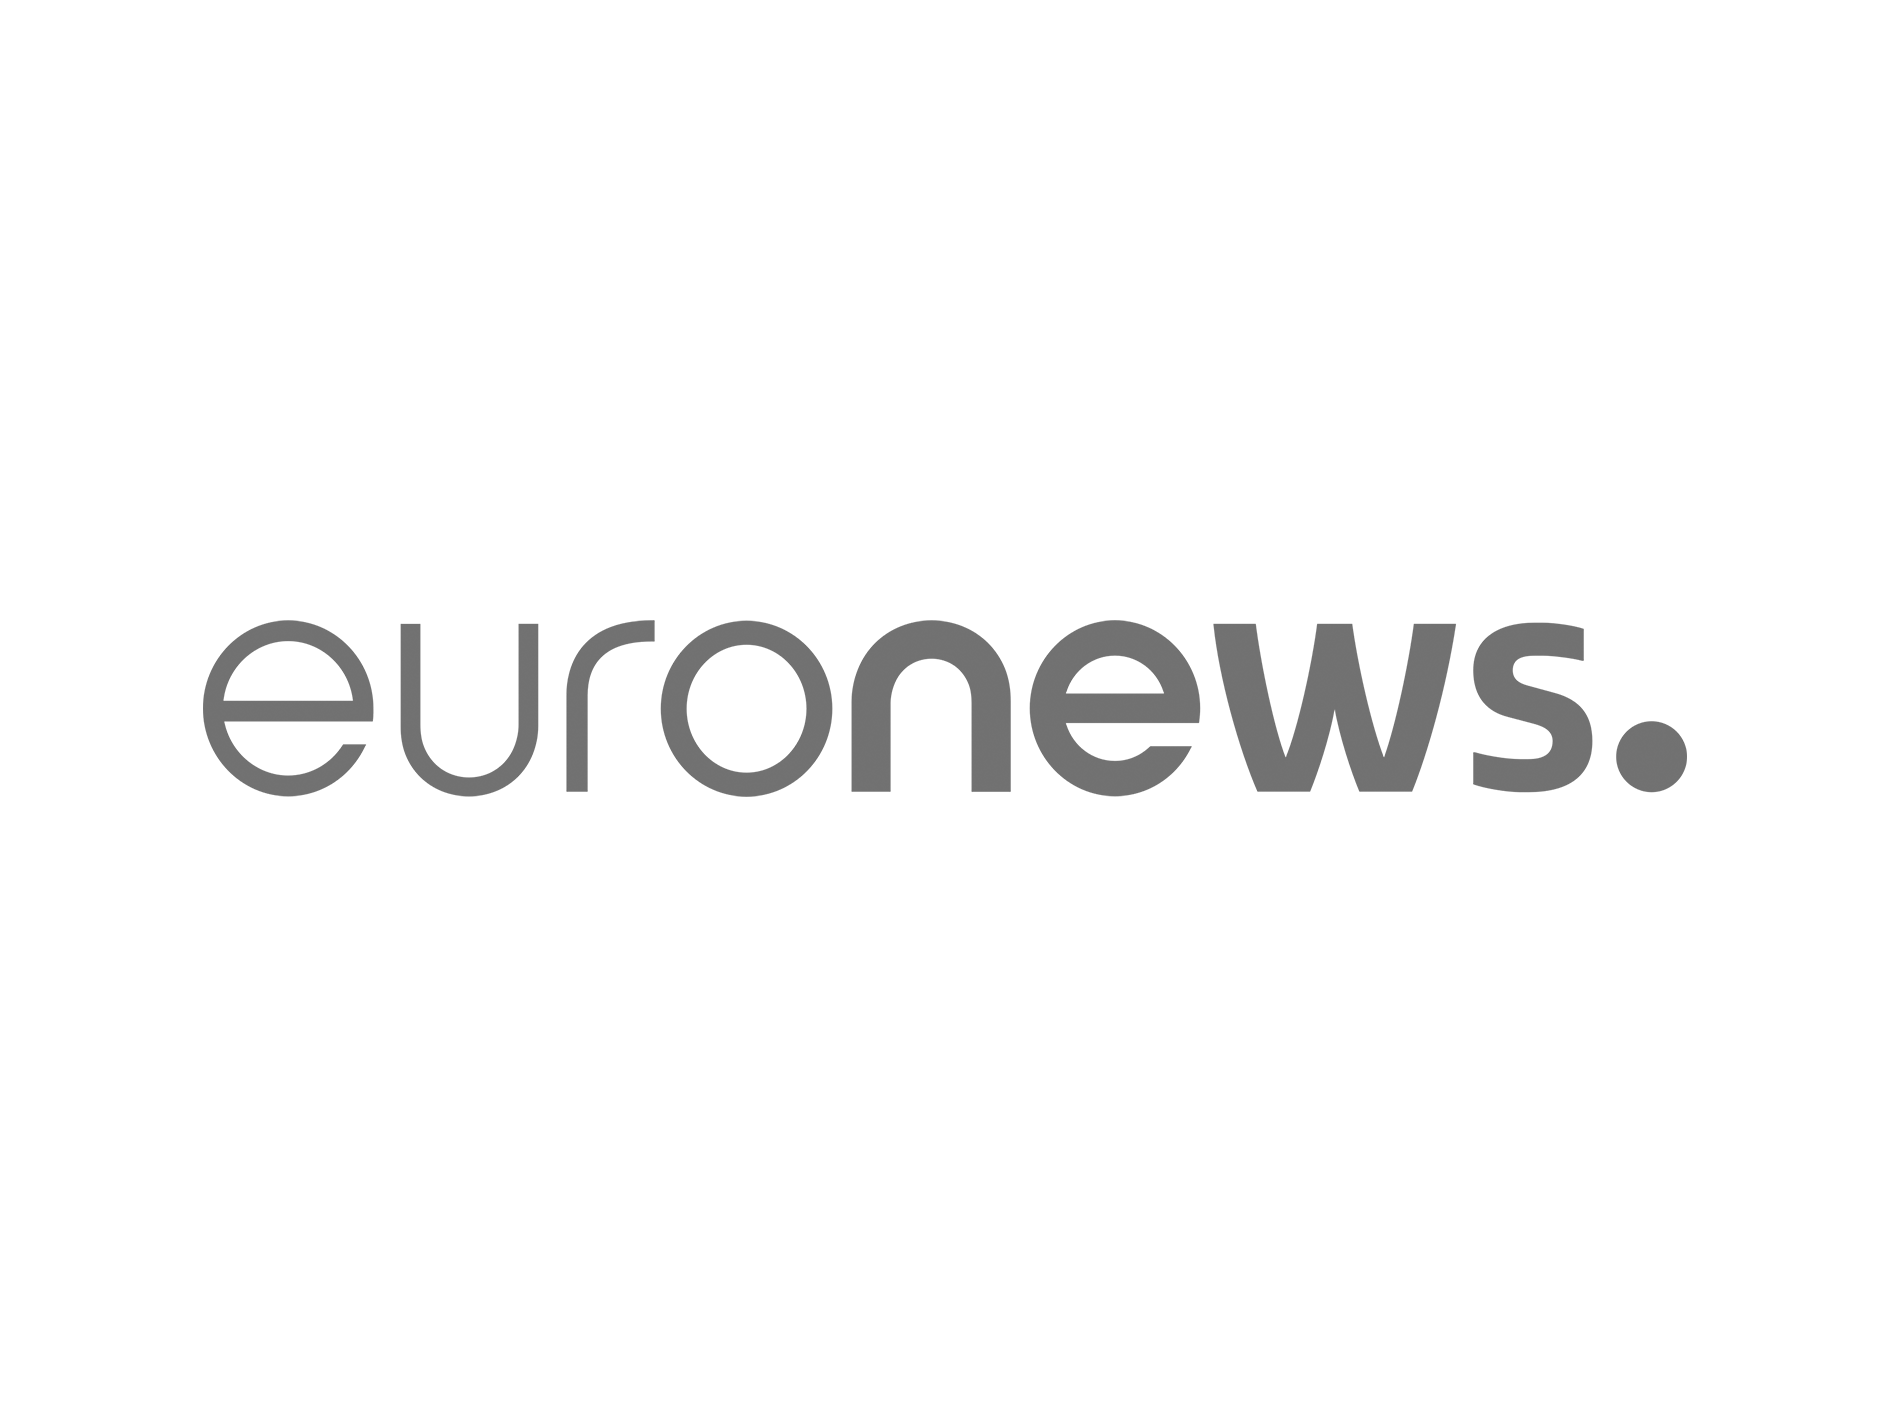 Logo Euronews